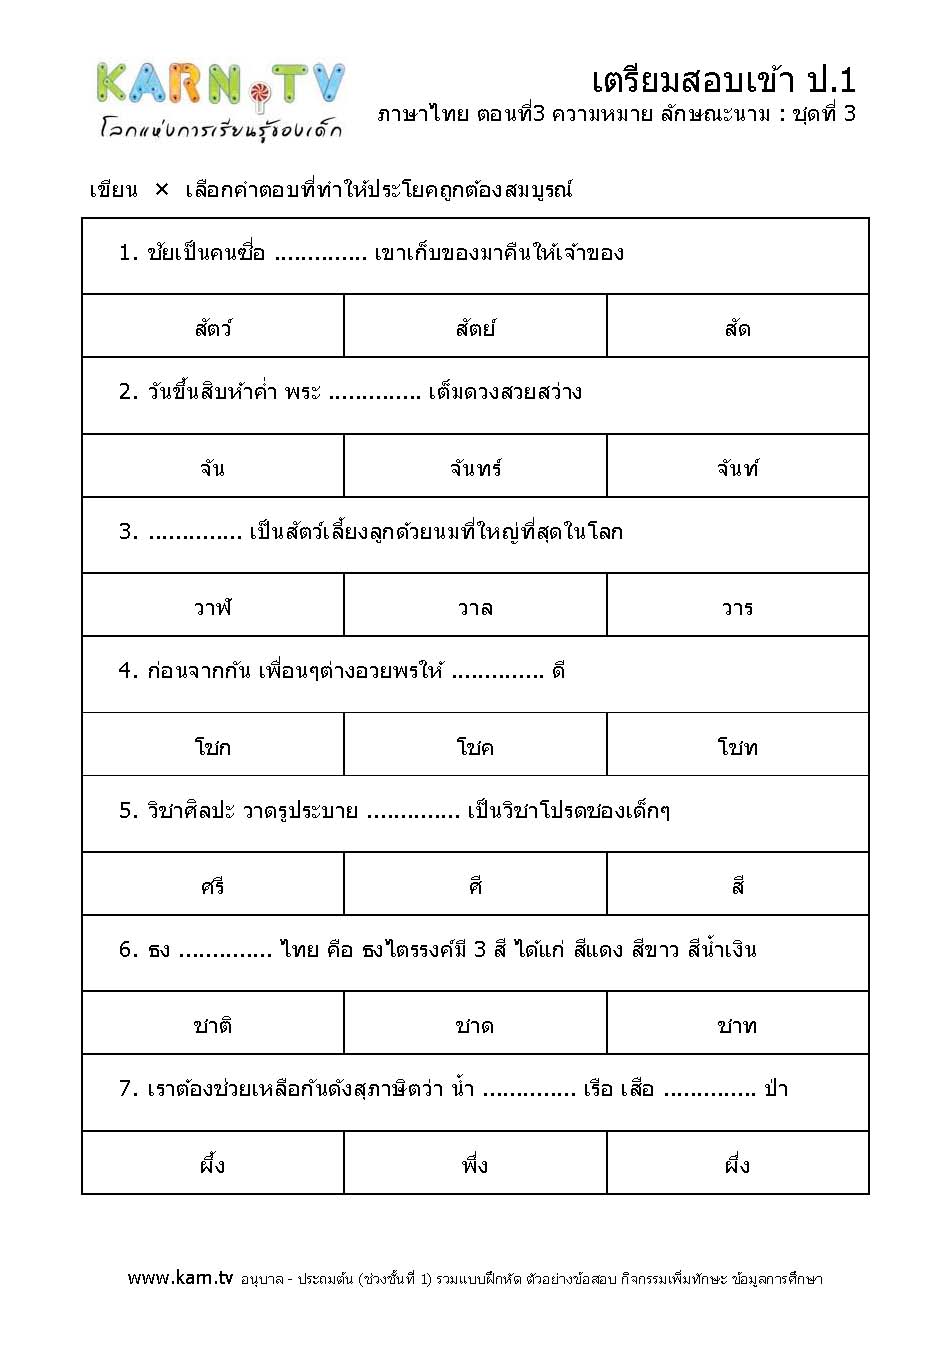 ภาษาไทย 3 ความหมาย ลักษณะนาม ชุด 3